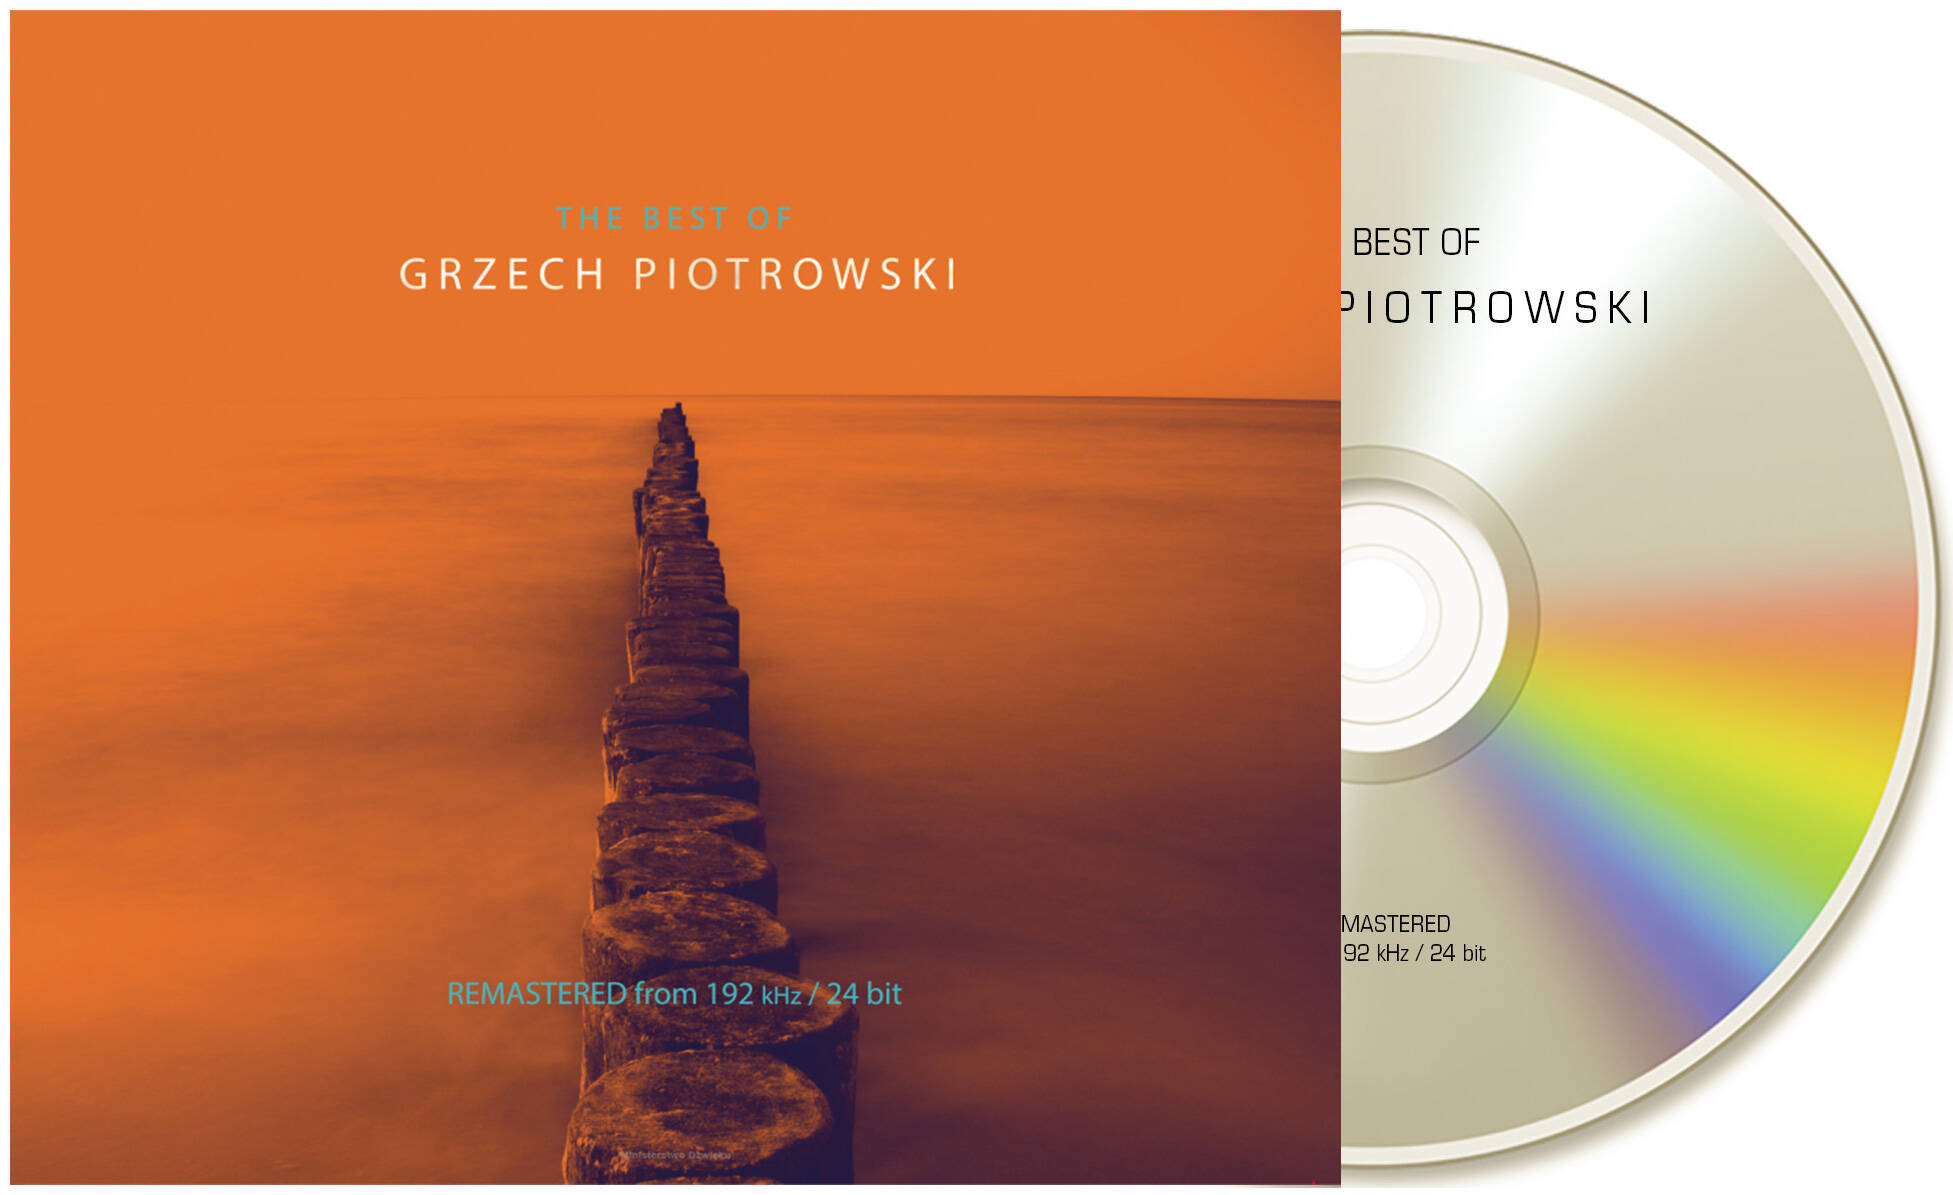 Grzech Piotrowski - The Best Of by Ministerstwo Dźwięku